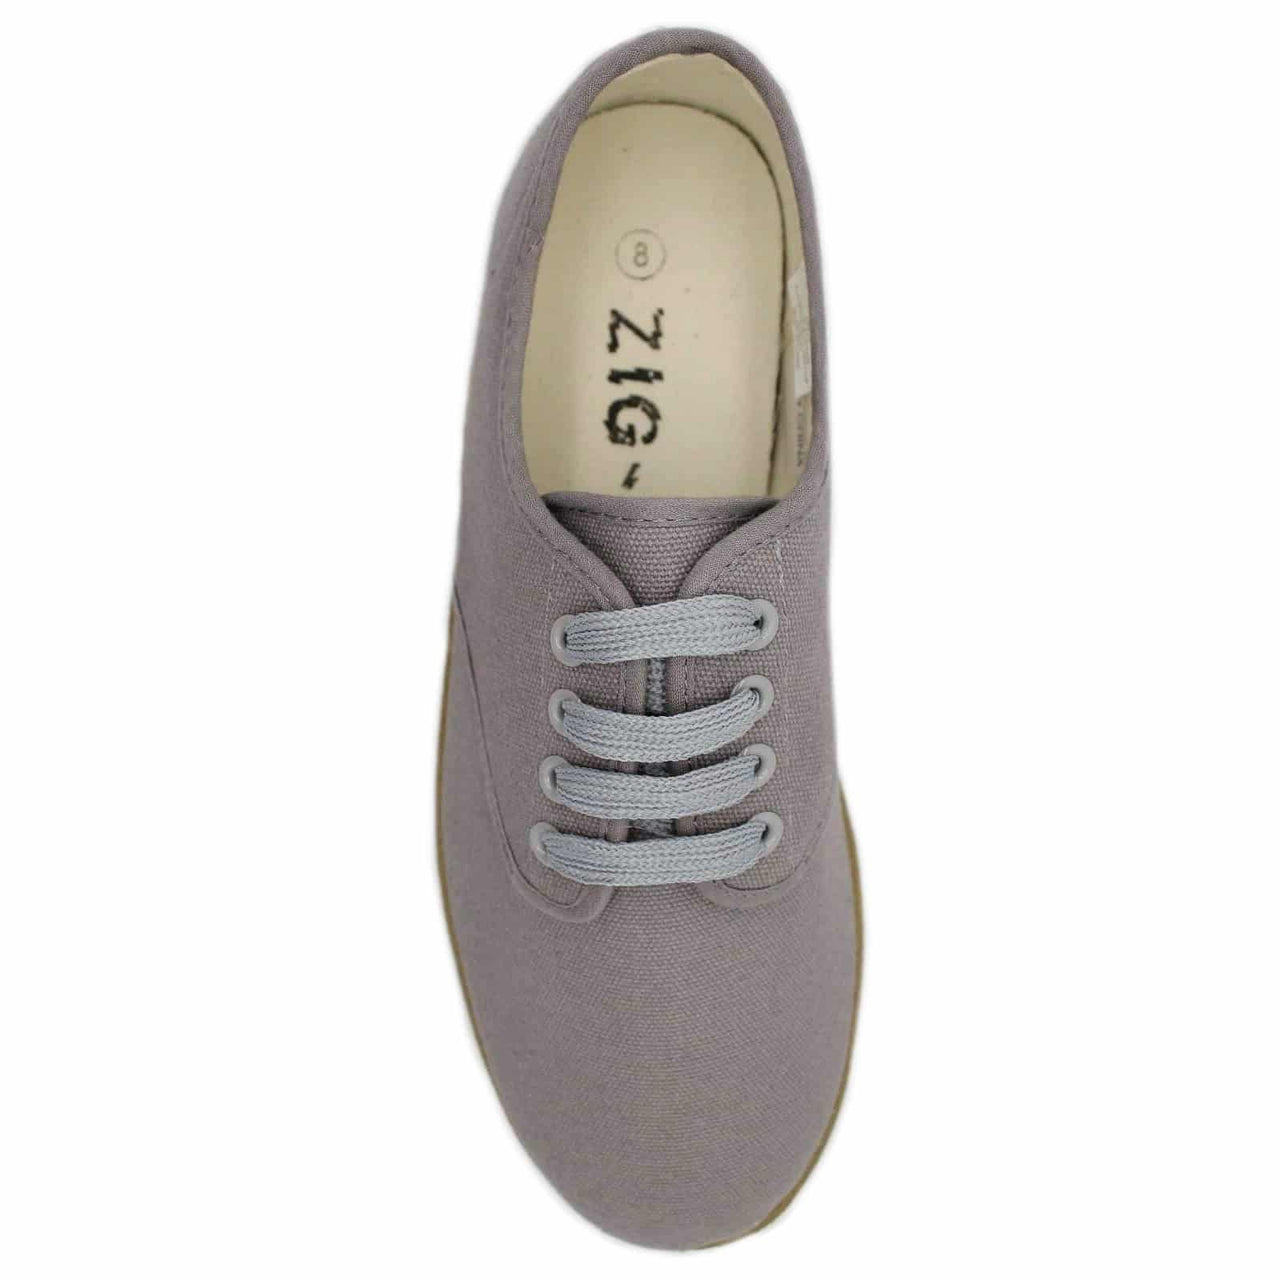 Zig Zag Wino Shoes Gray/Gum Sole 7201